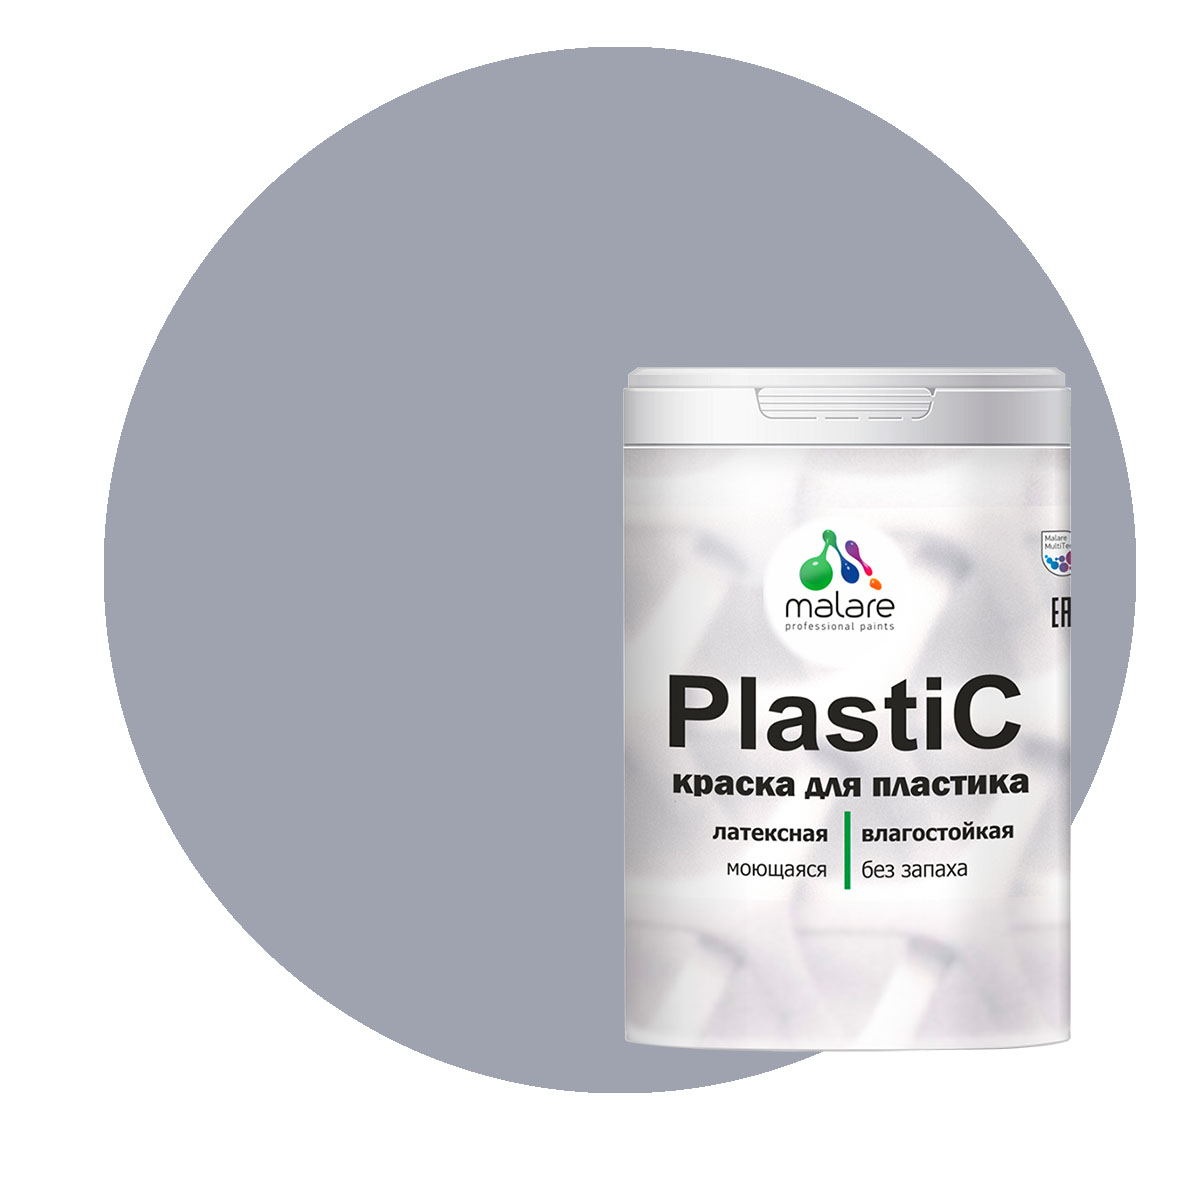 Краска Malare PlastiC для пластика, ПВХ, для сайдинга, темно-серый 1 кг. краска для пластика сайдинга пвх malare